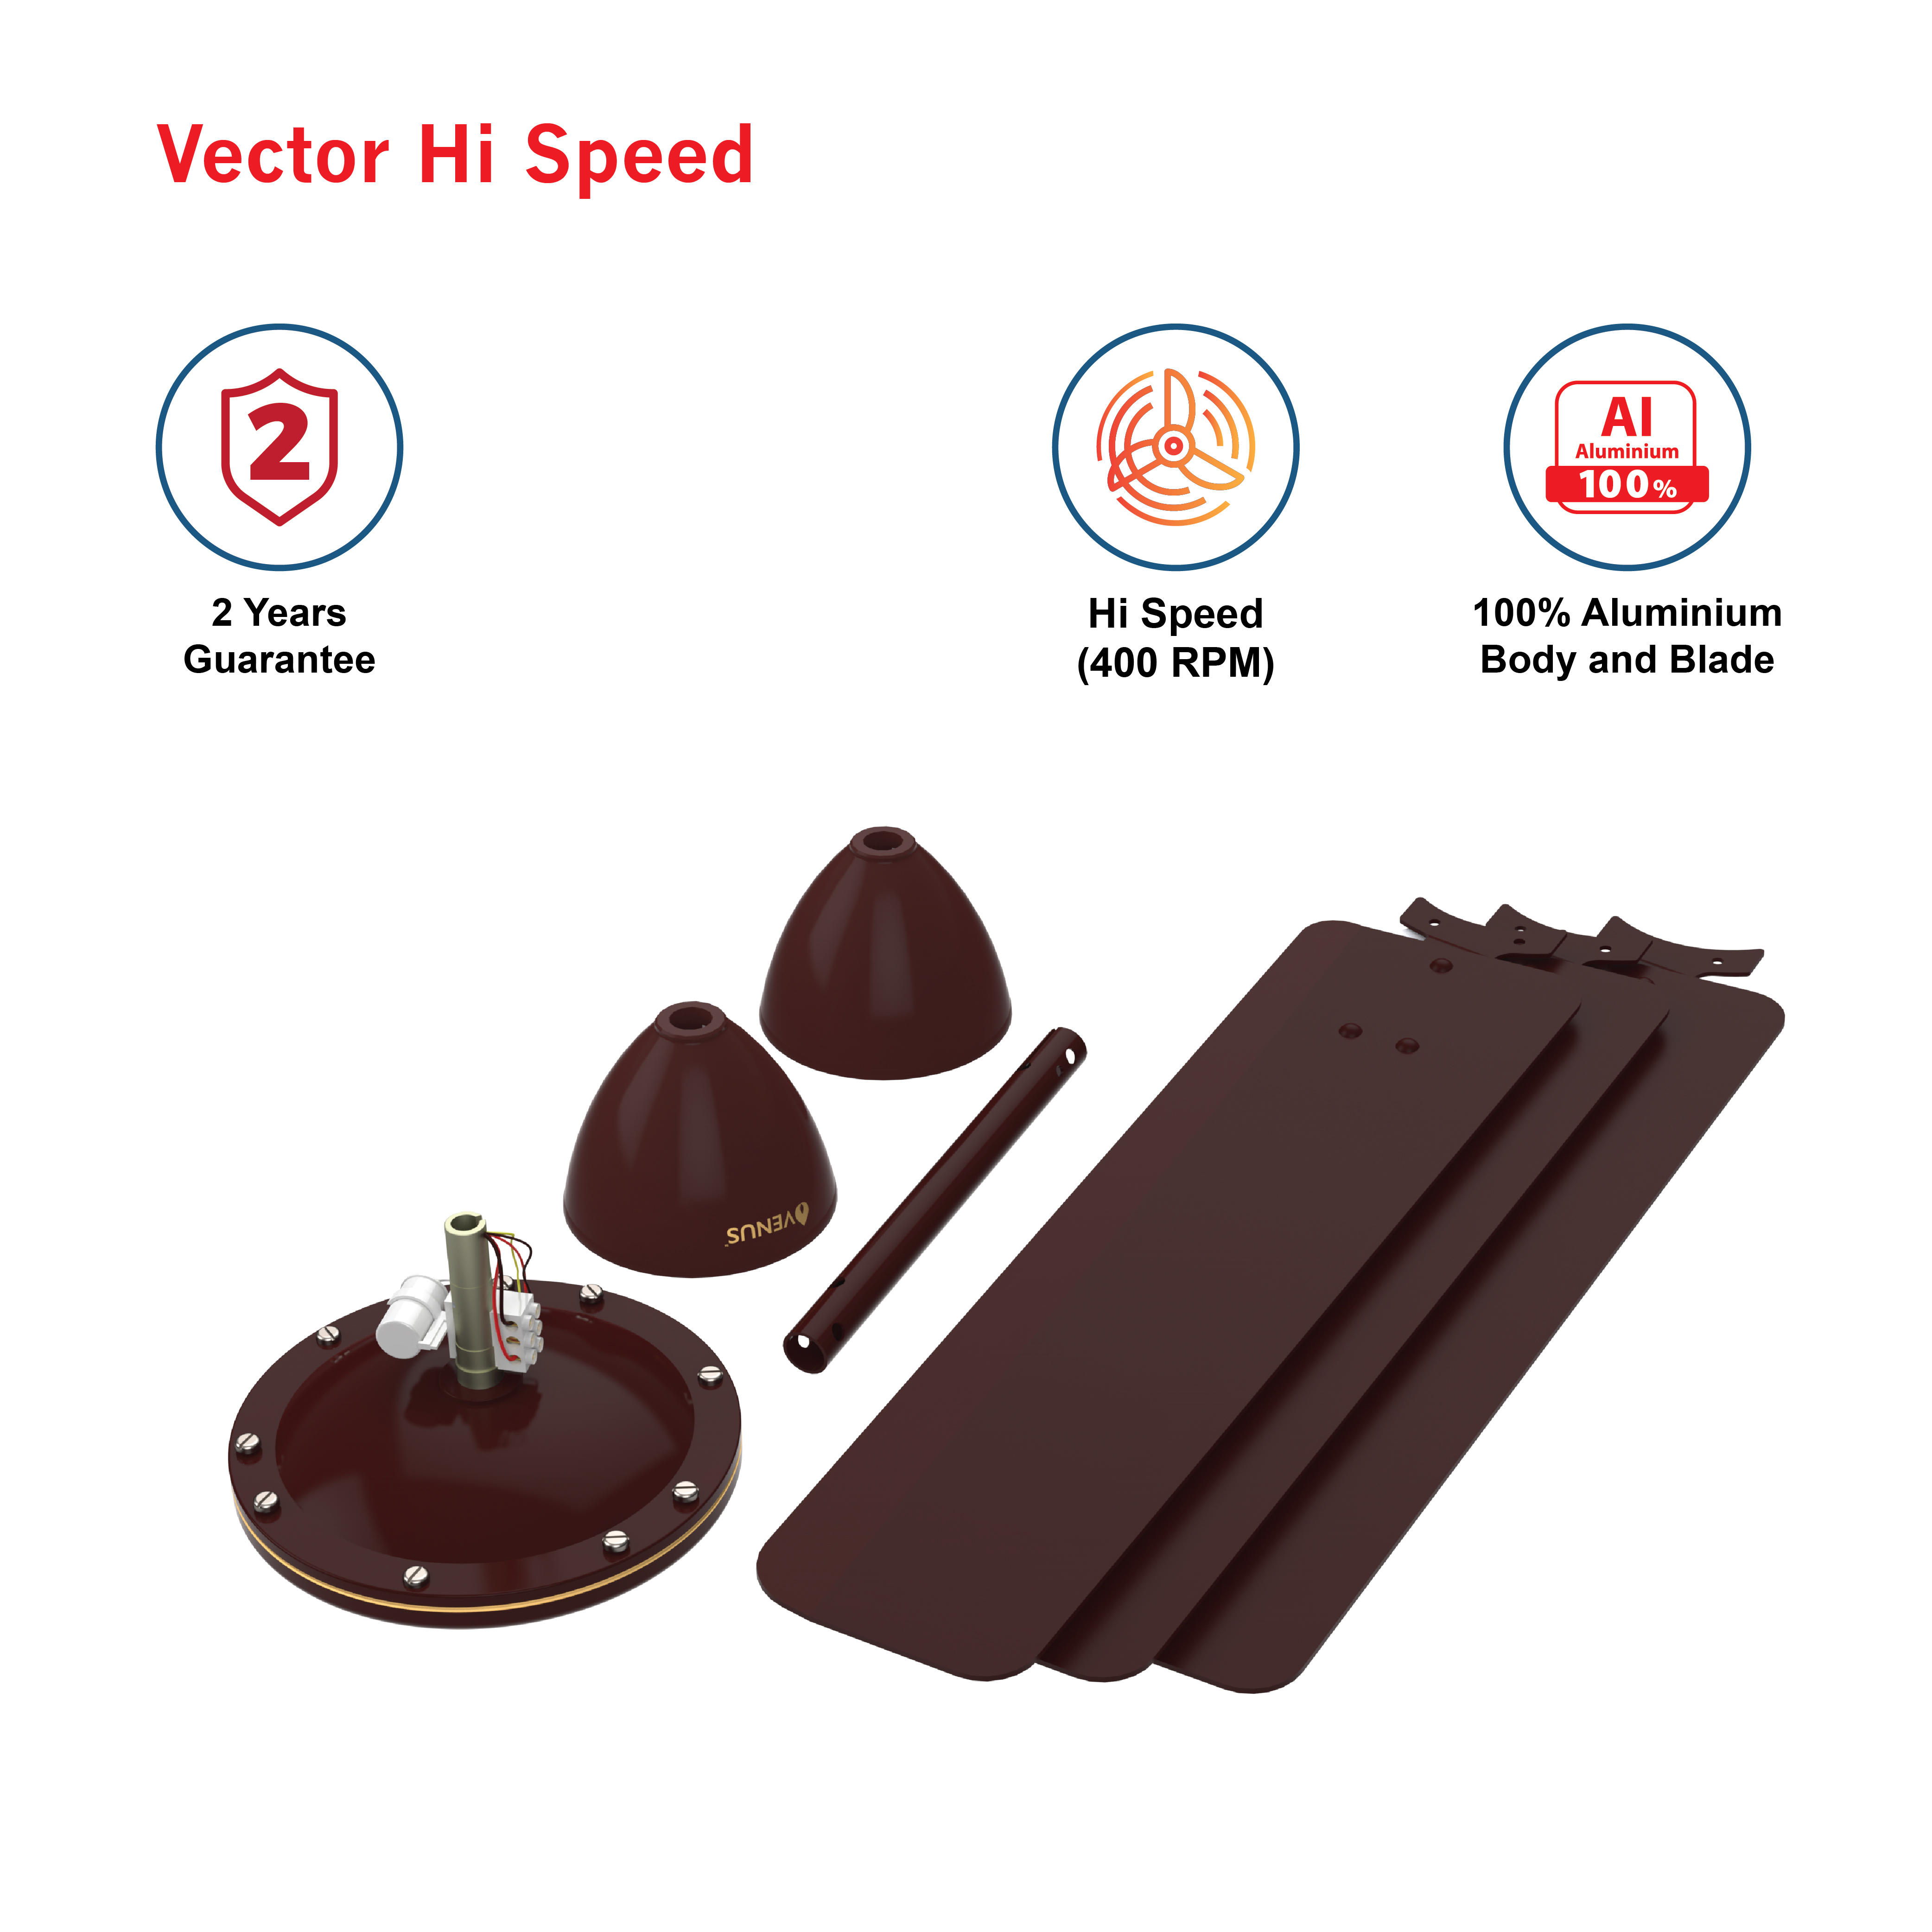 Vector-Hi-speed - V900mm